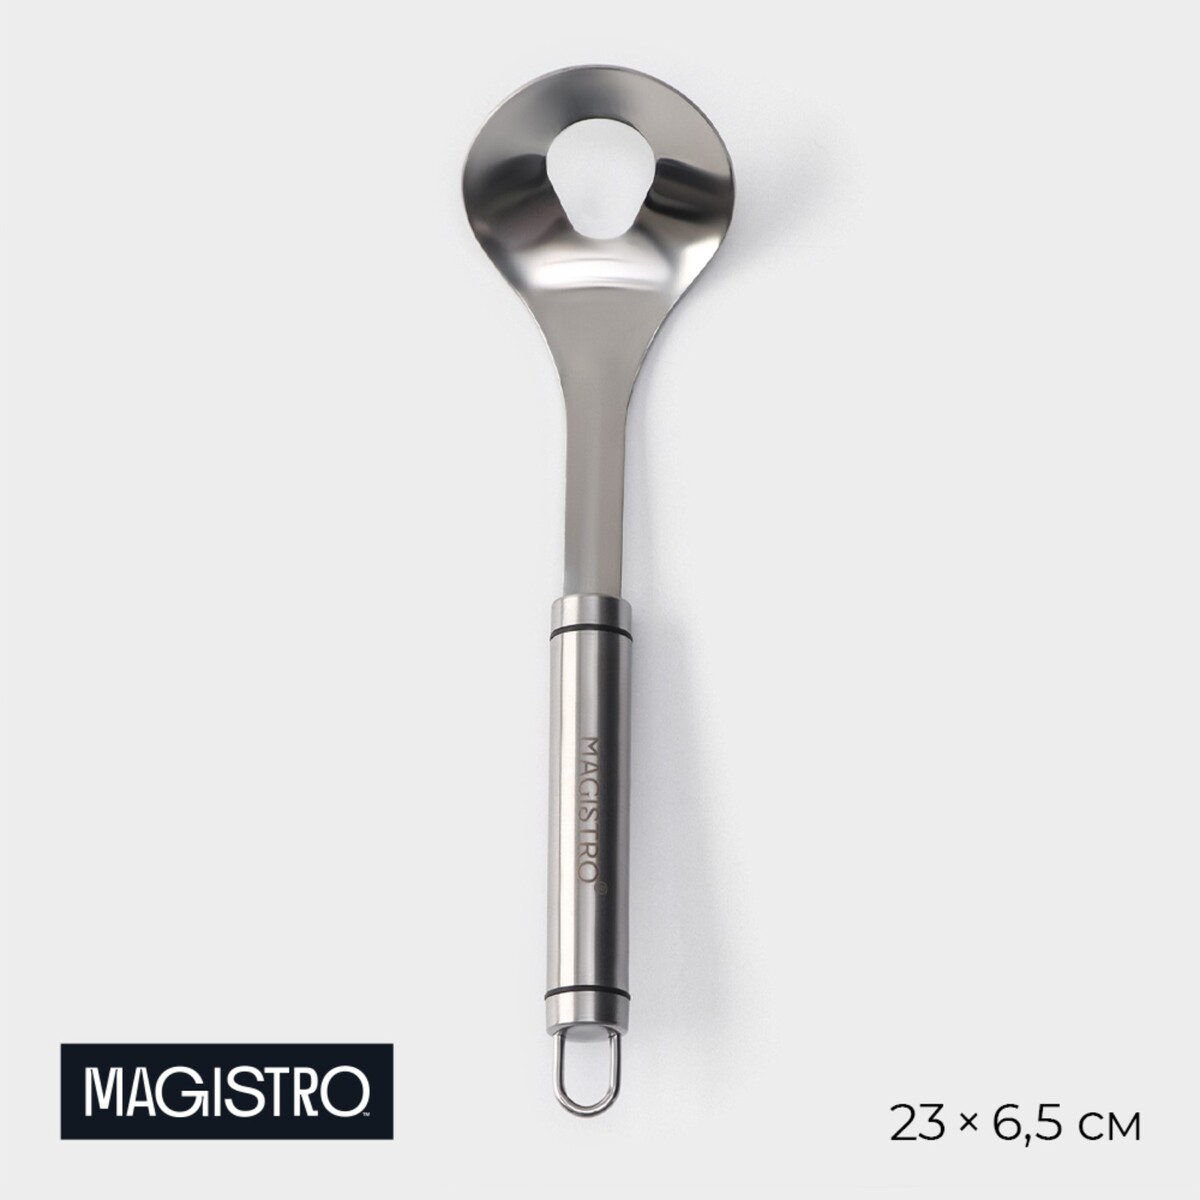 Ложка для формирования митболов magistro solid, 23×6,5 см, цвет хромированный ложка для формирования митболов magistro solid 23×6 5 см хромированный